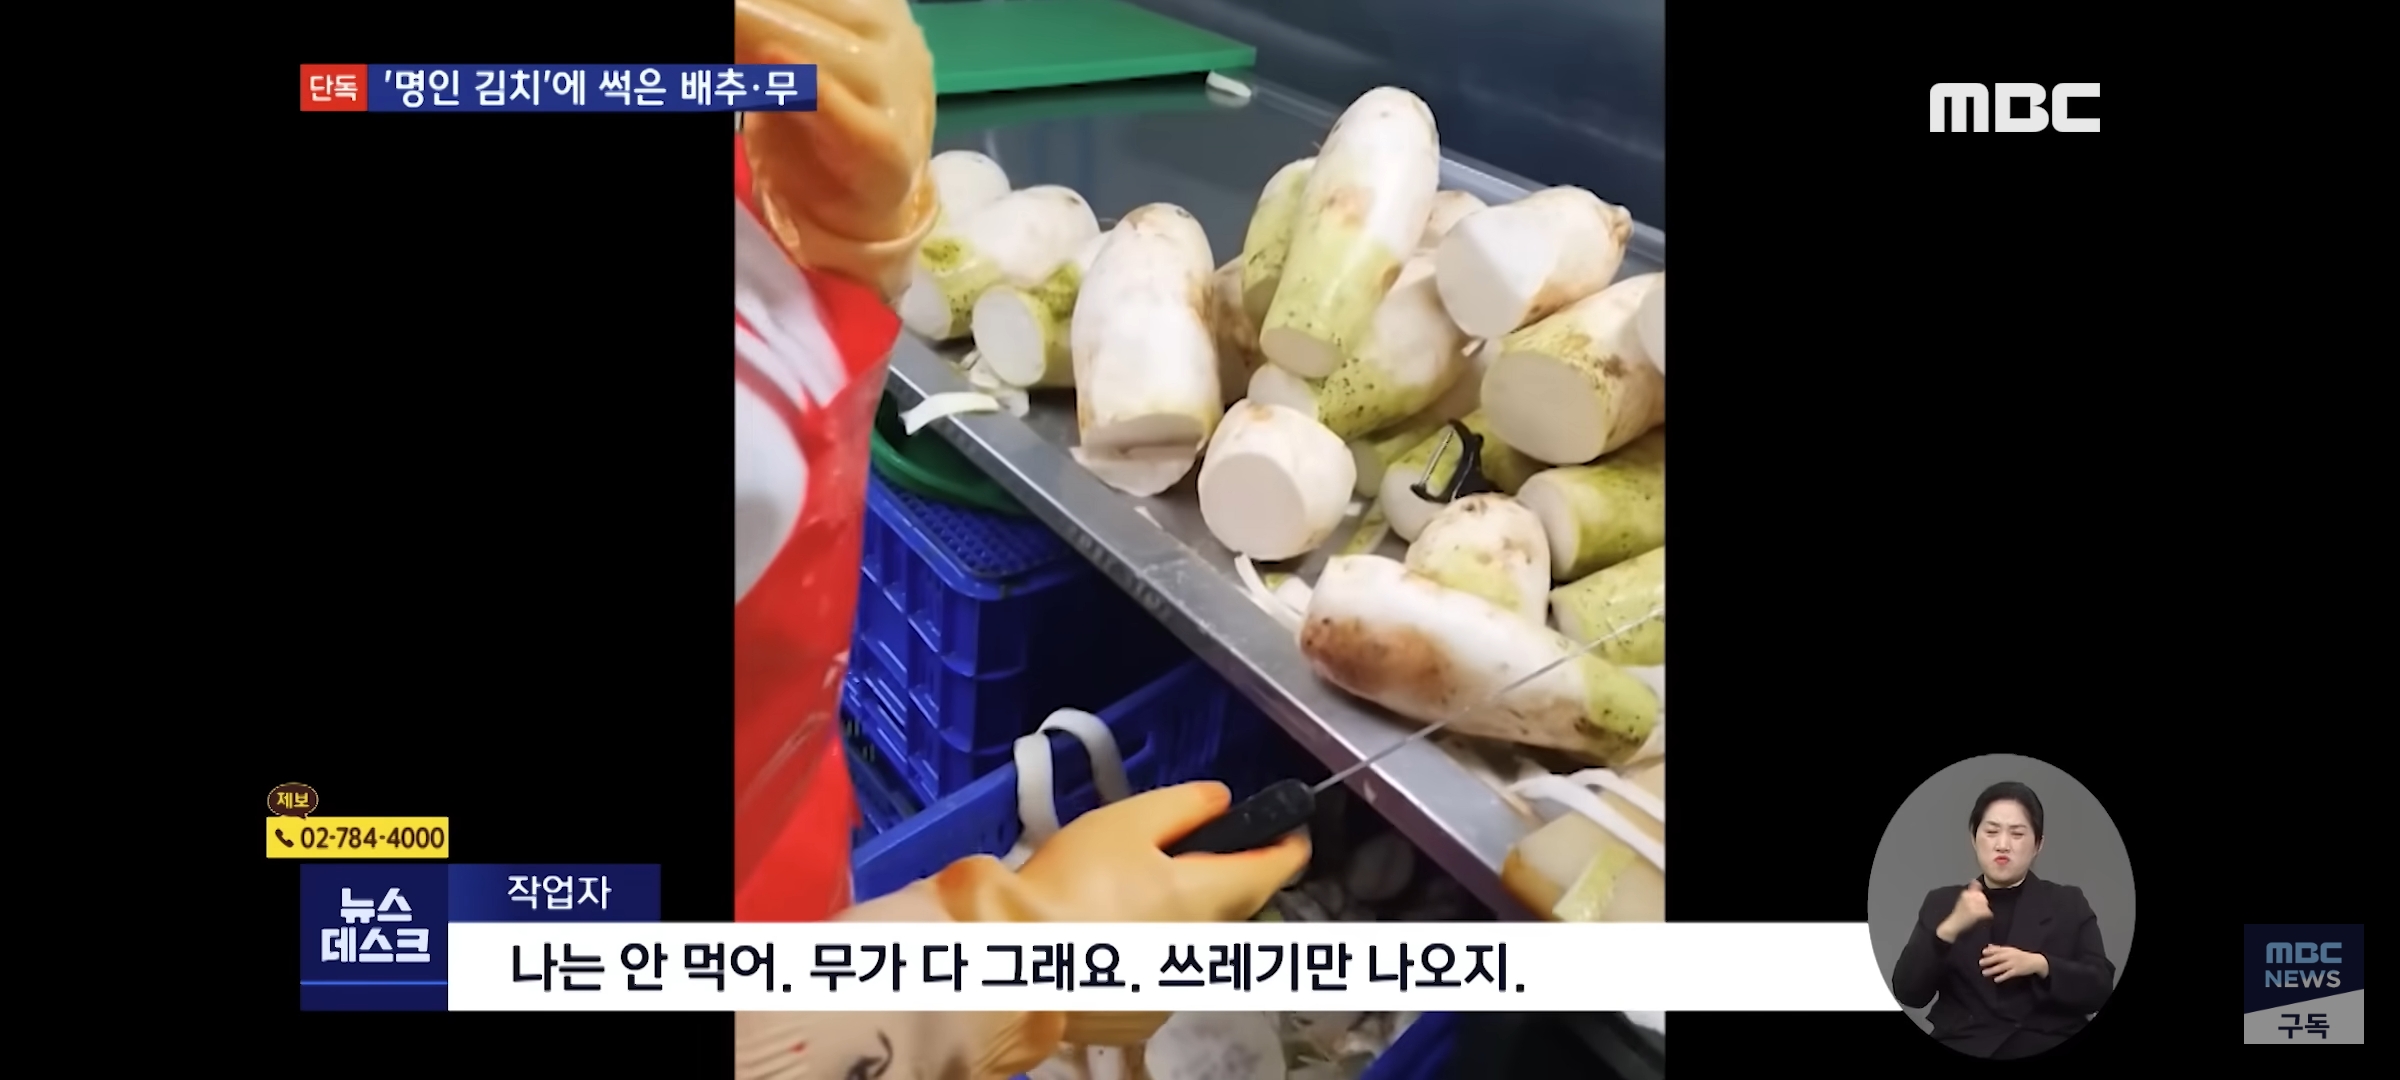 대한민국 명인 장인이 만든 한성식품 김치